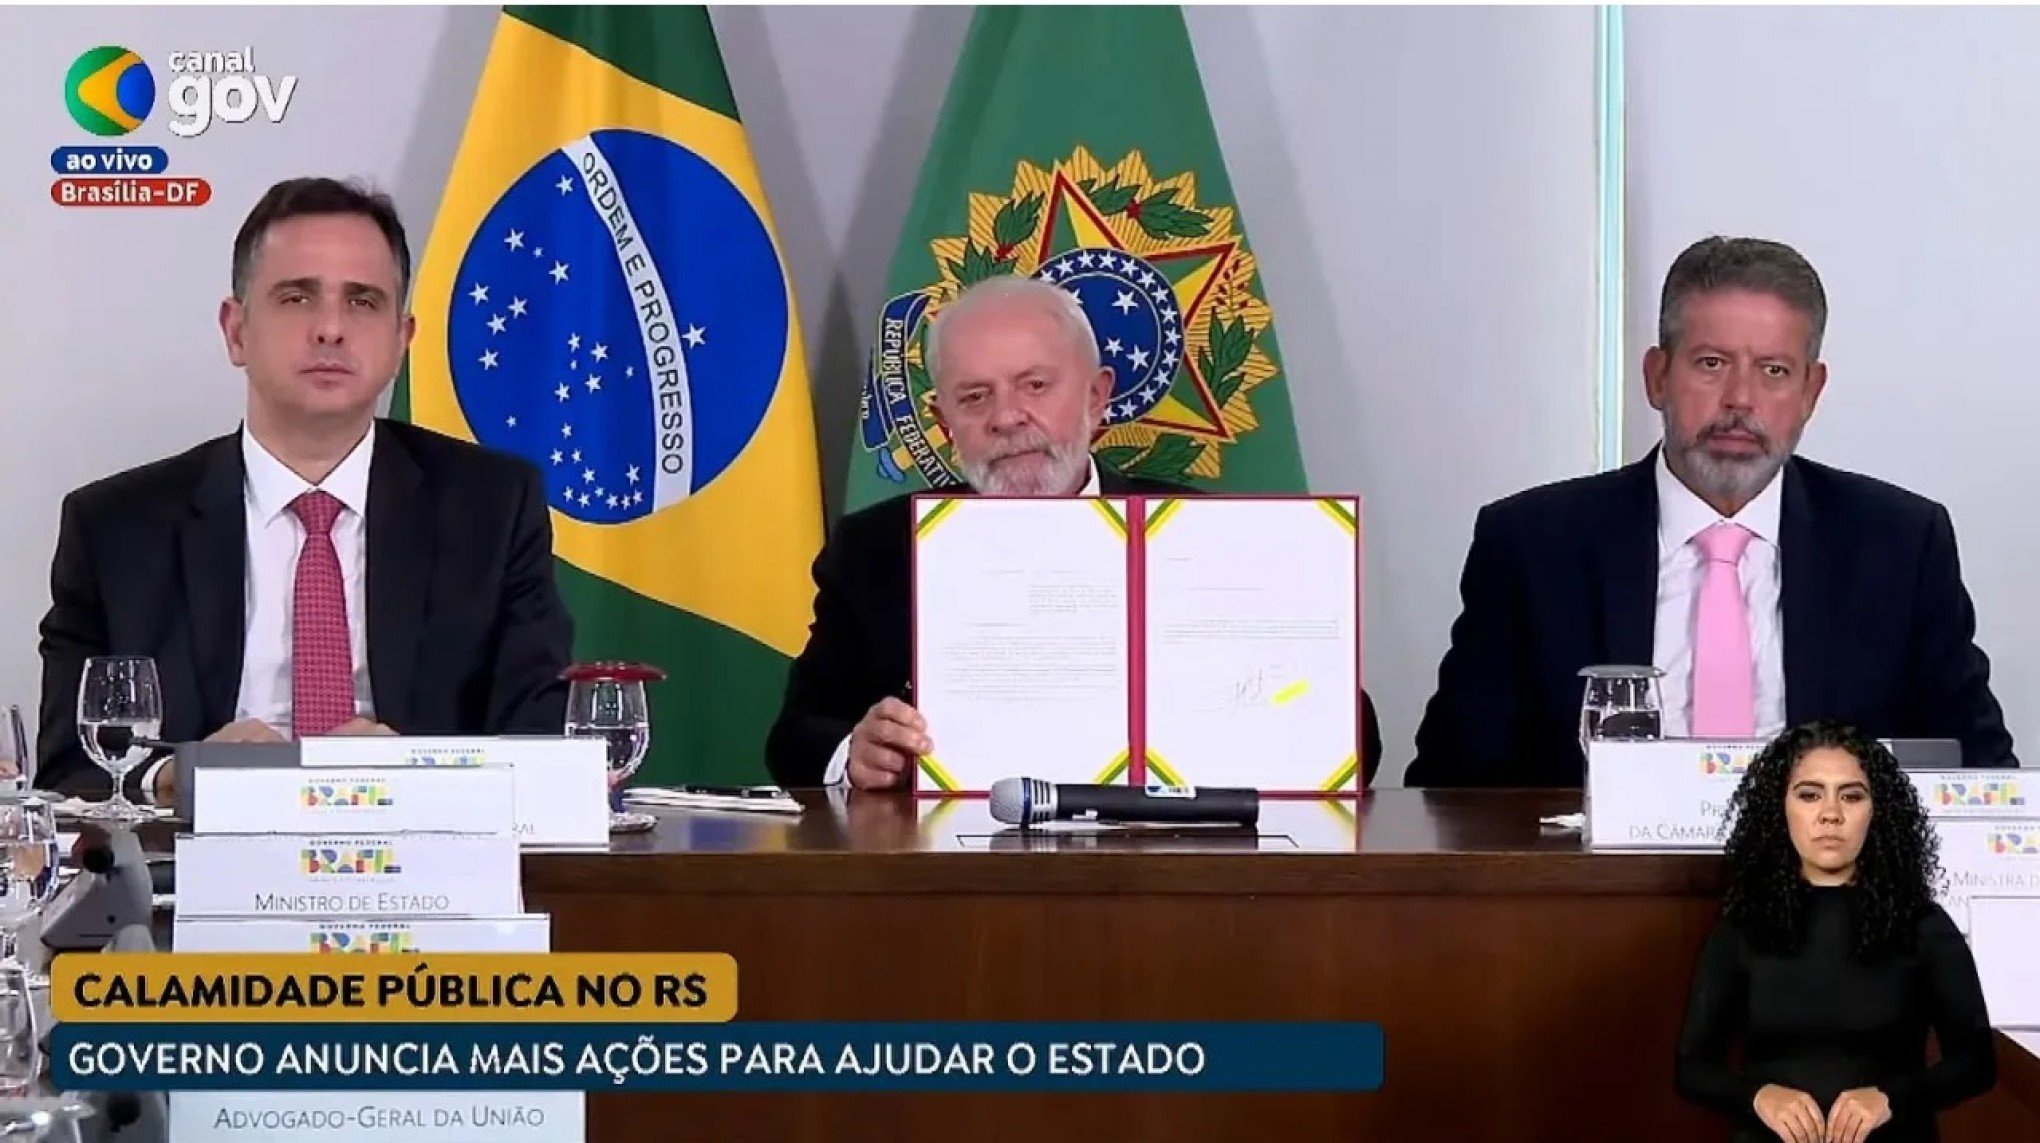 CATÁSTROFE NO RS: Lula envia projeto para acelerar repasses de verbas ao Rio Grande do Sul